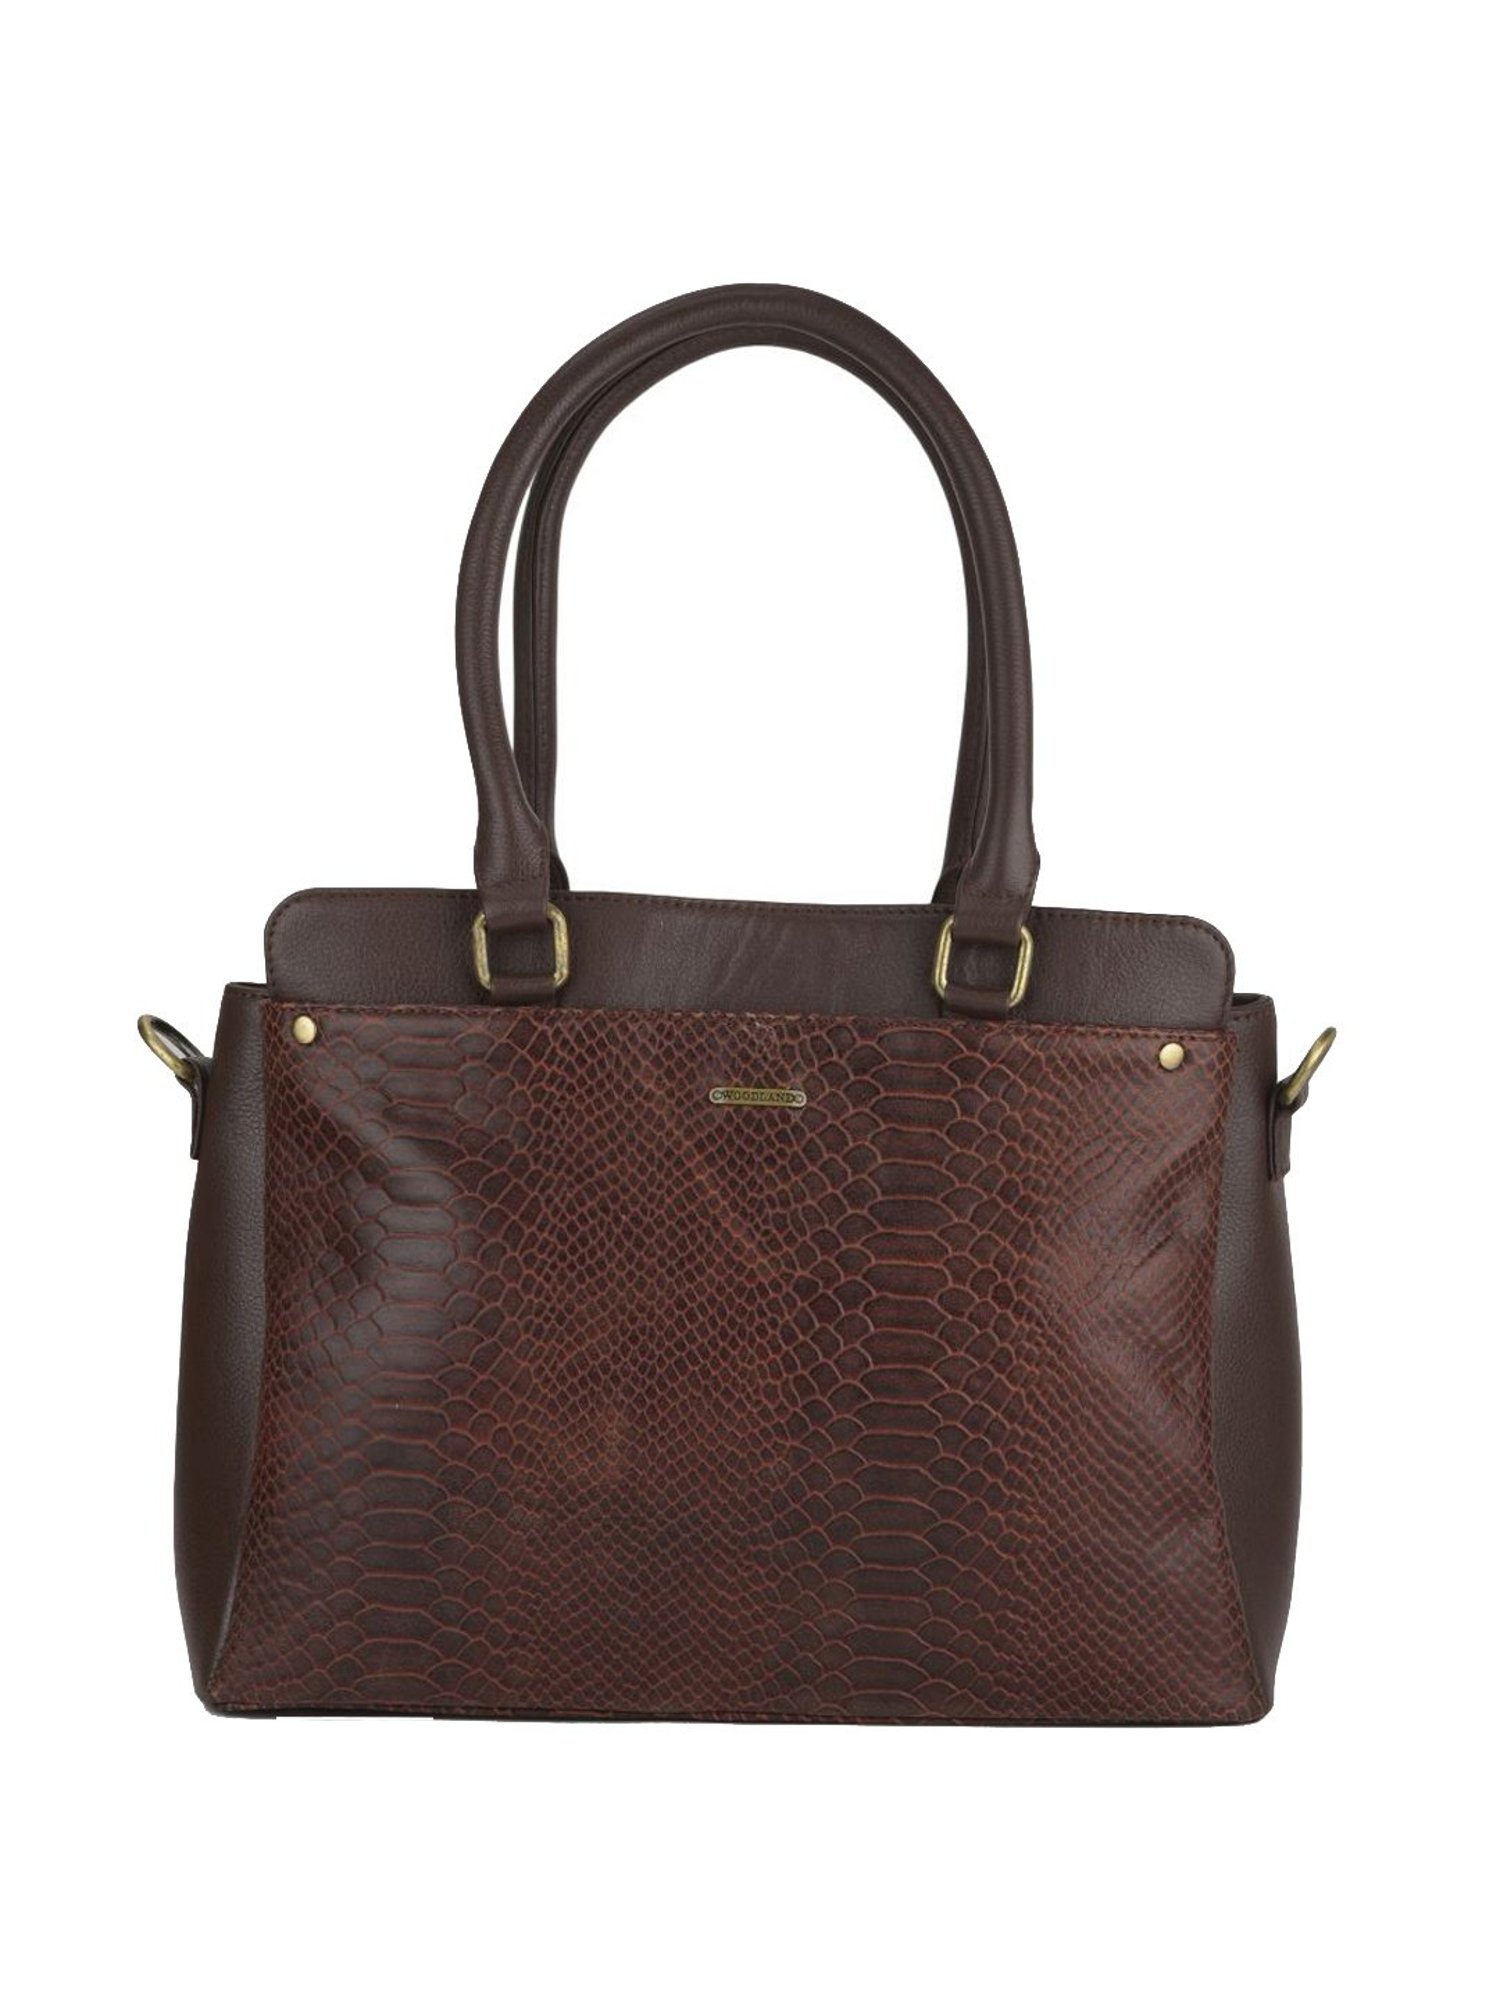 Buy Woodland Women's Handbag (Beige) at Amazon.in